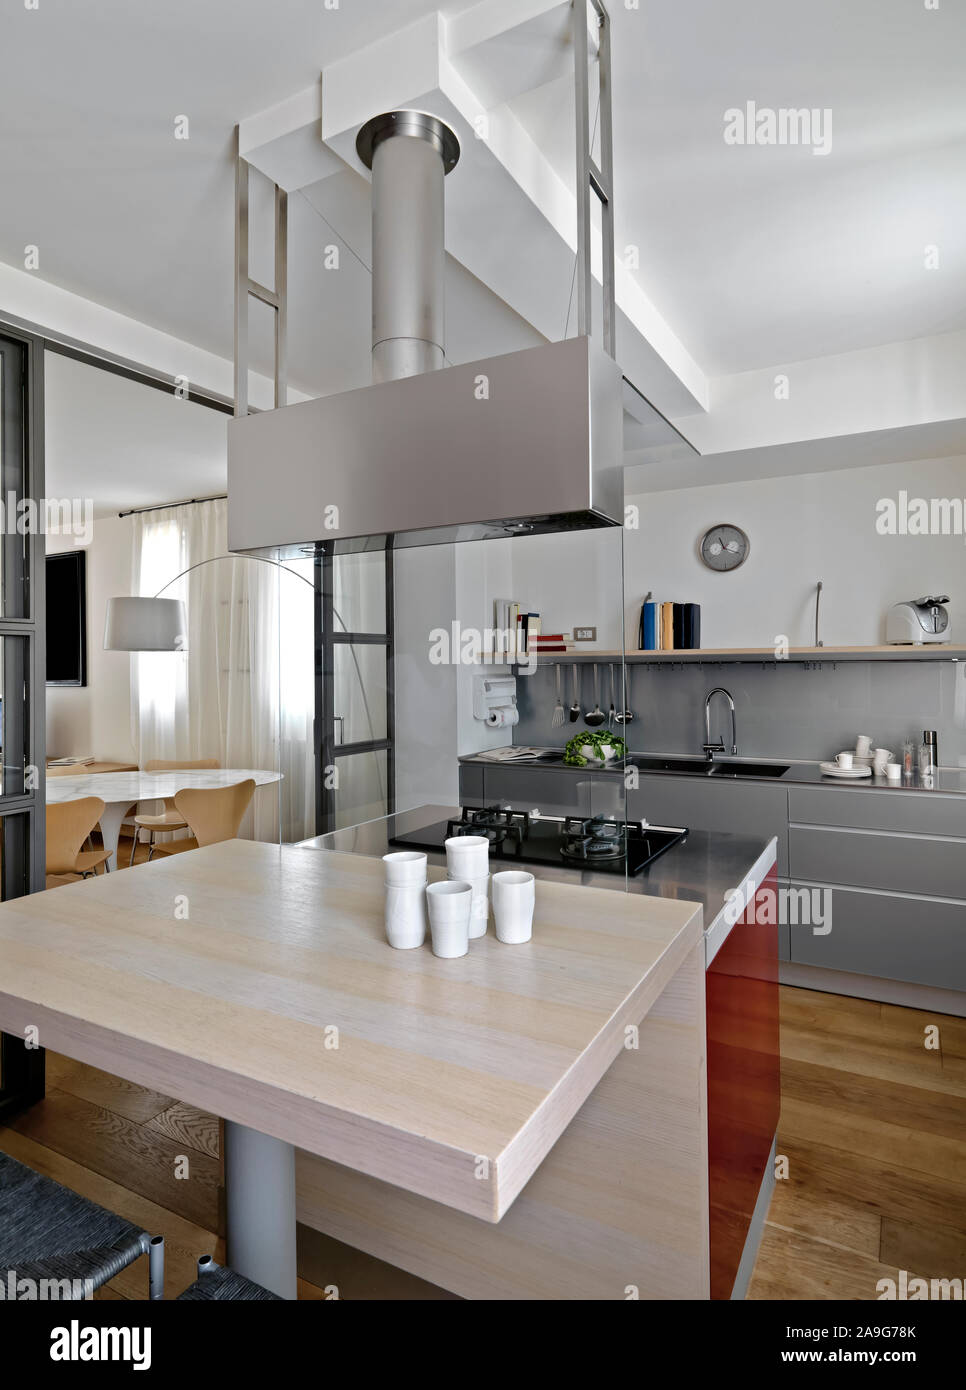 Innere Aufnahme einer modernen Küche im Vordergrund der Küche mit Esstisch und einem Gasherd, während im Hintergrund die Küchenschränke mit Bu Stockfoto